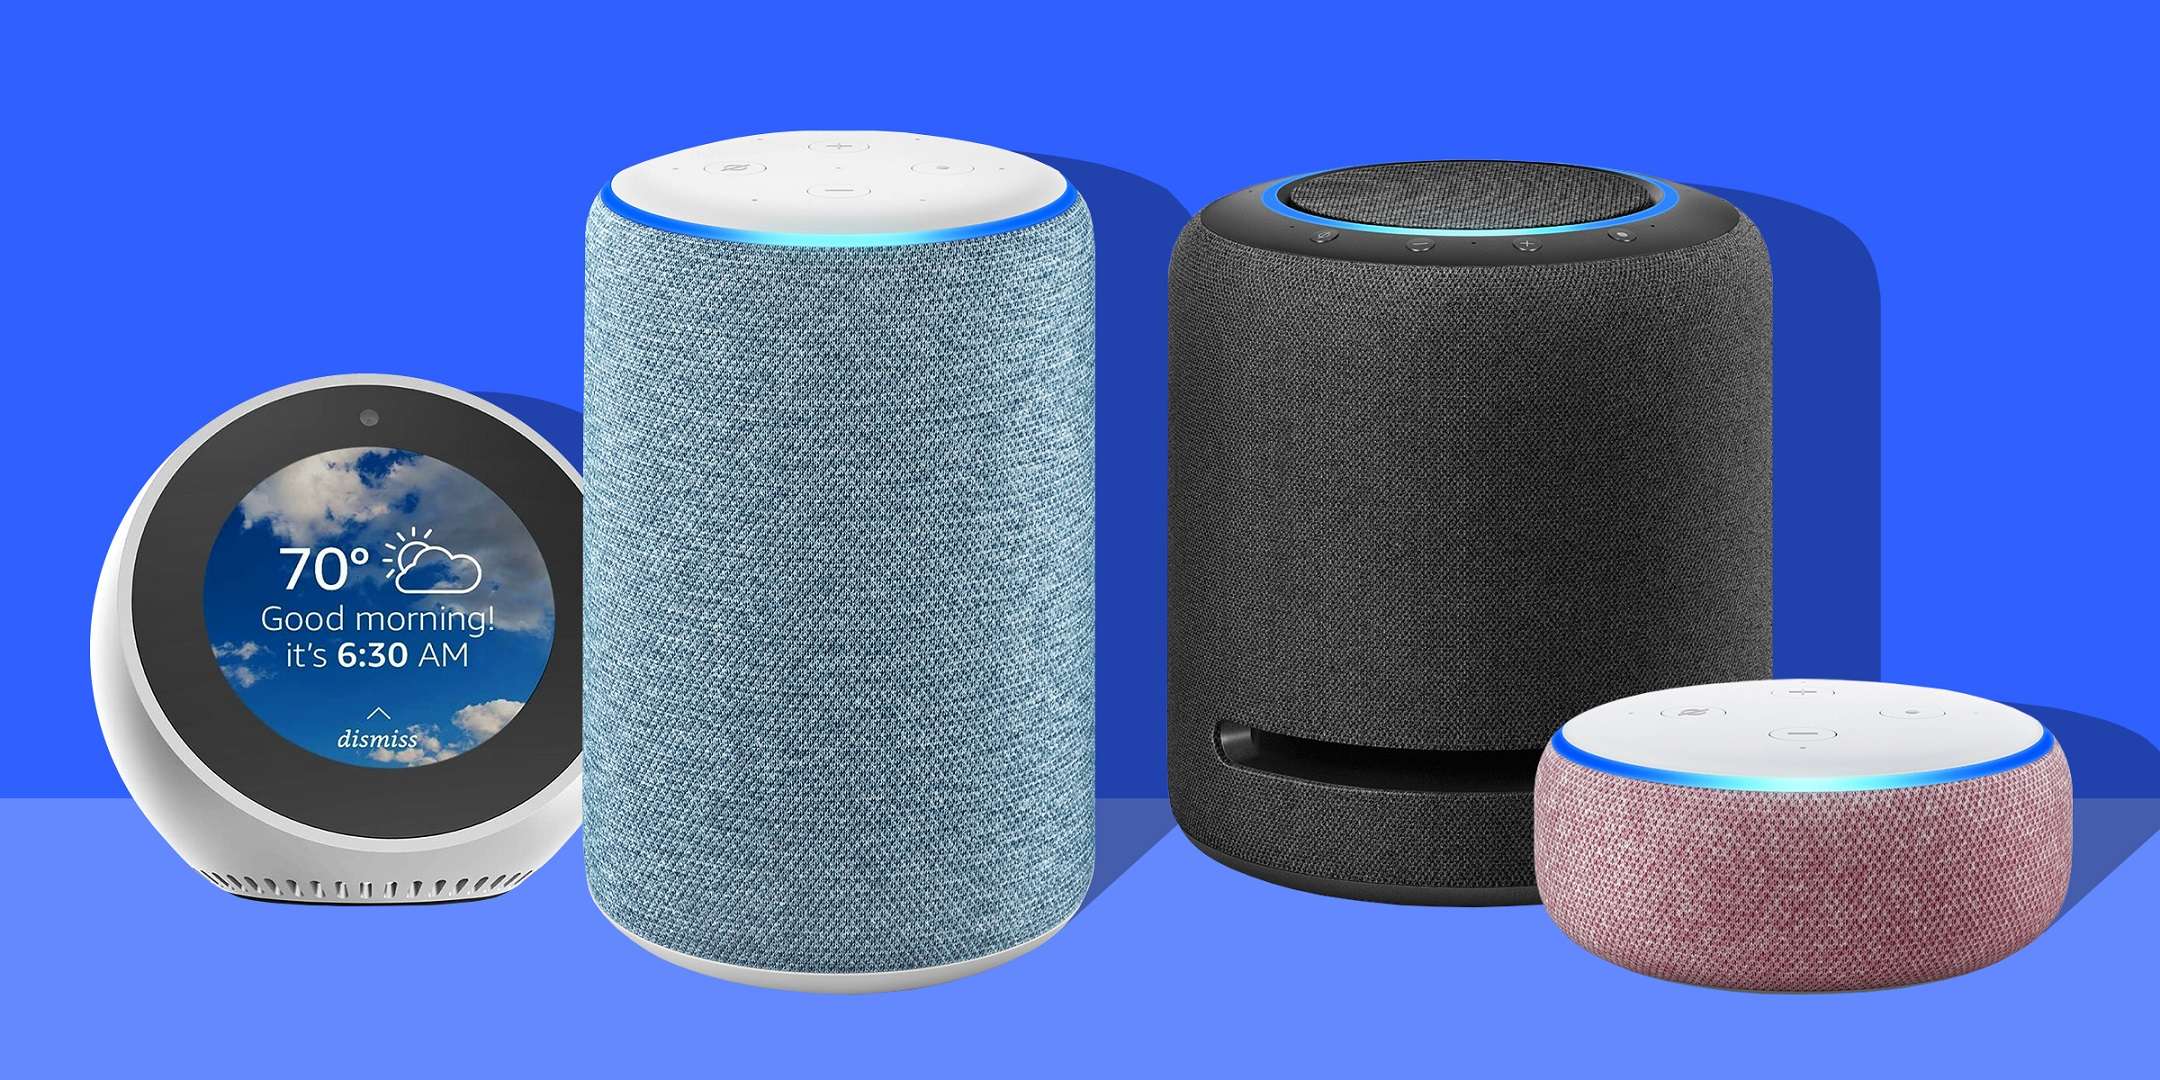 Prime Day 2020: quali Amazon Echo acquistare?